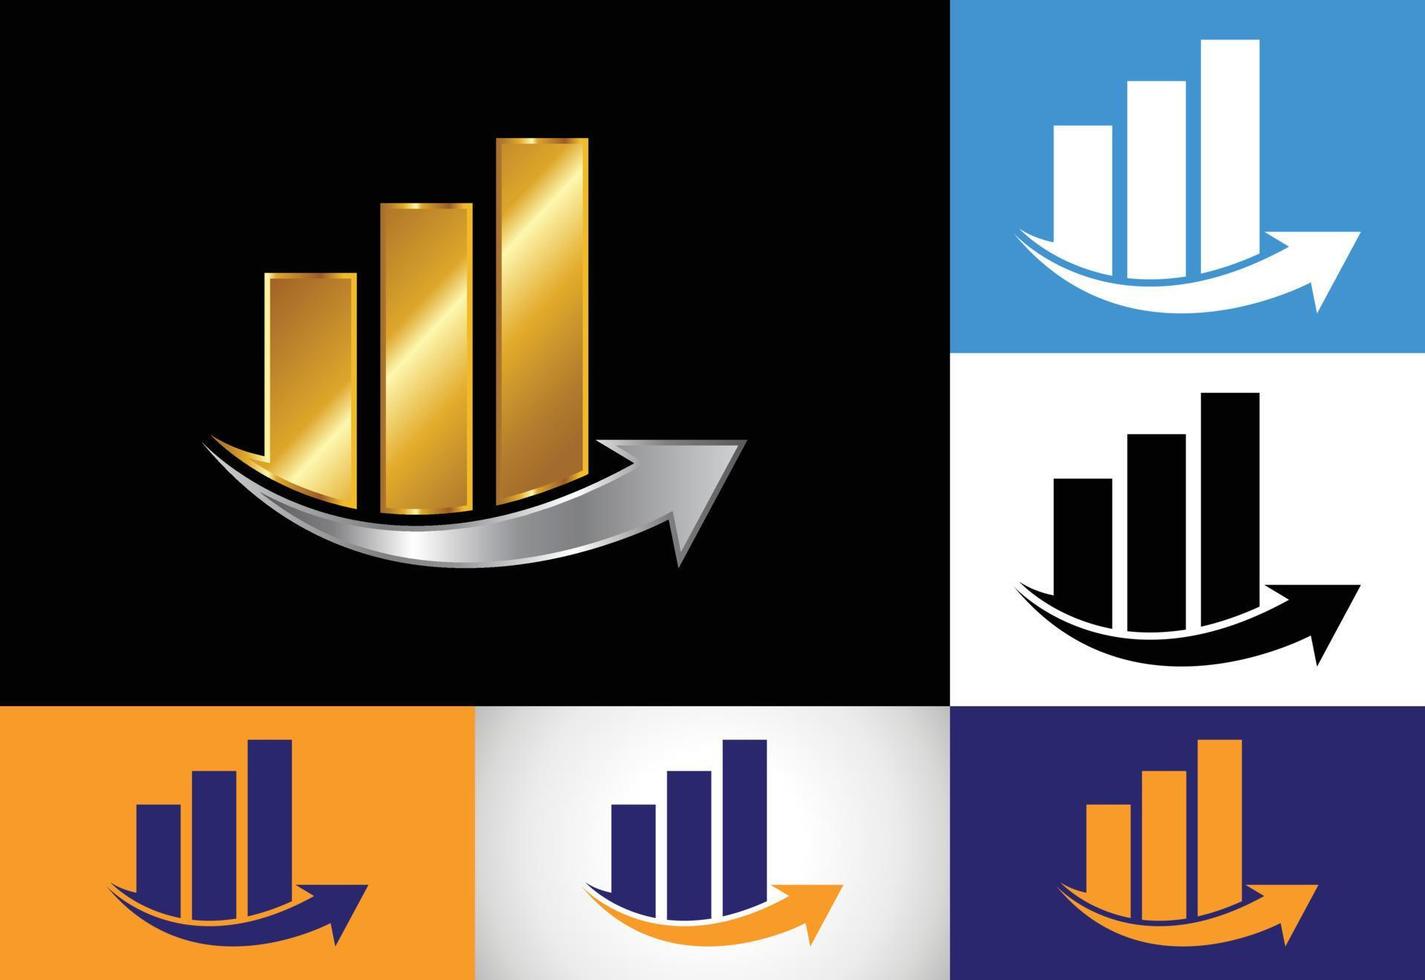 modello vettoriale per la progettazione del logo finanziario e contabile con variazioni di colore multiple